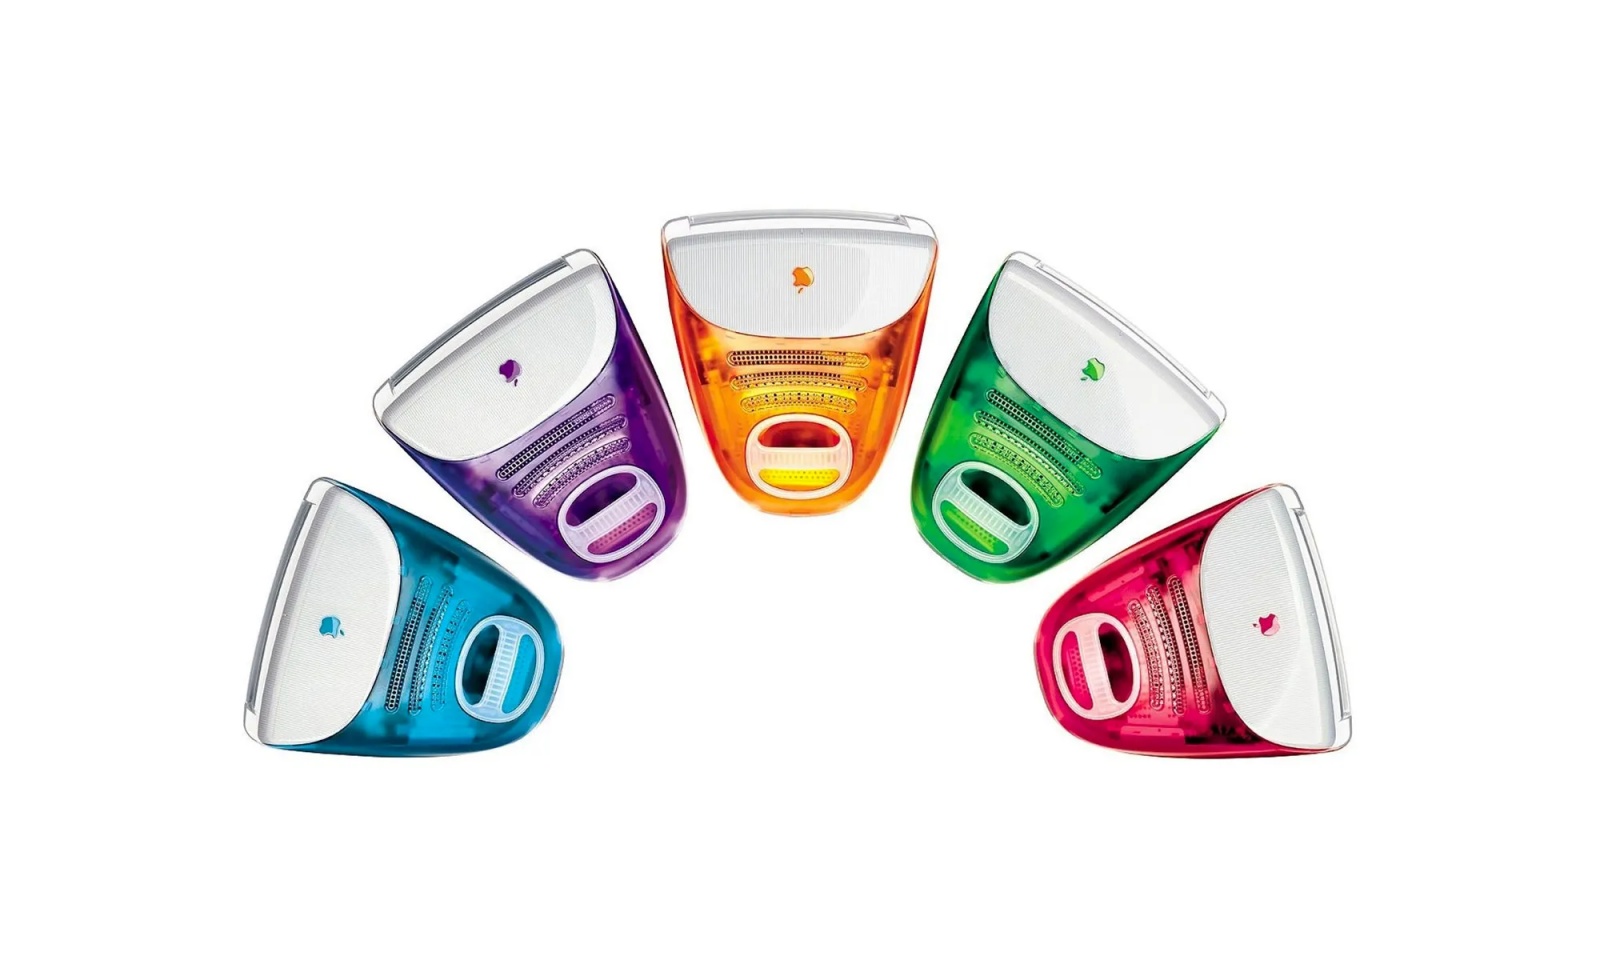 iMac G3 В различных цветах